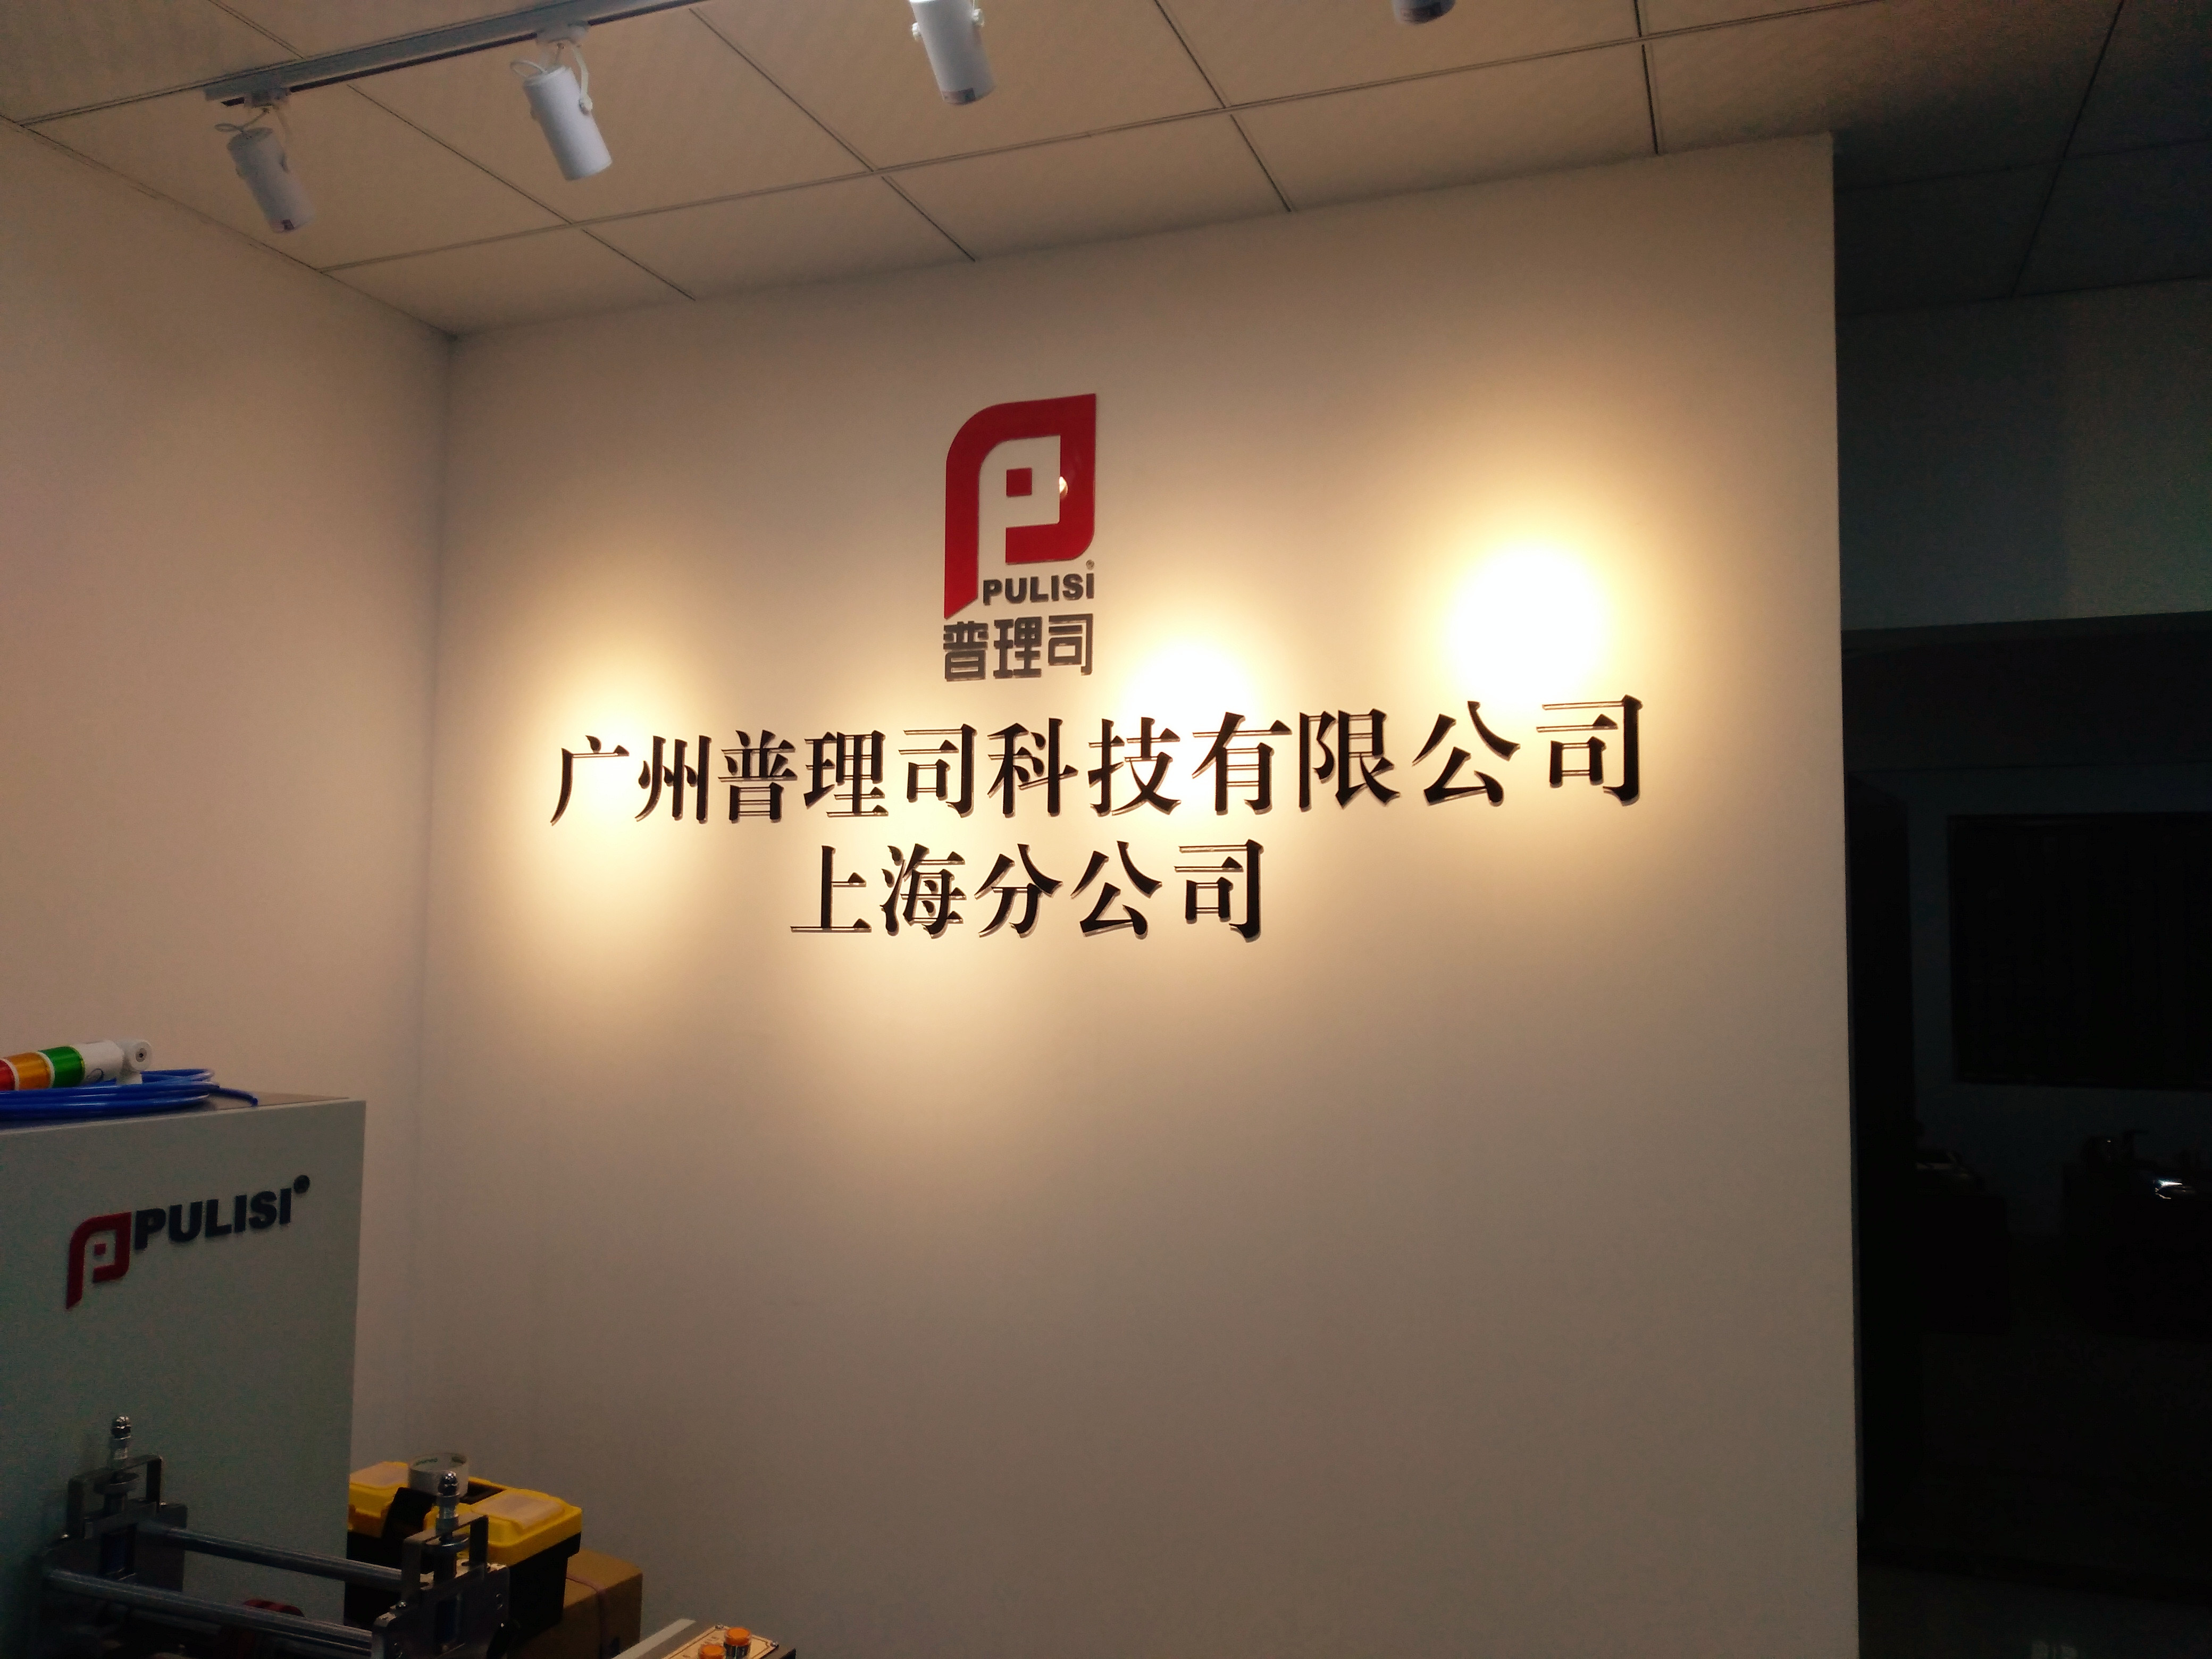 上海公司名称标牌、形象背景墙制作批发